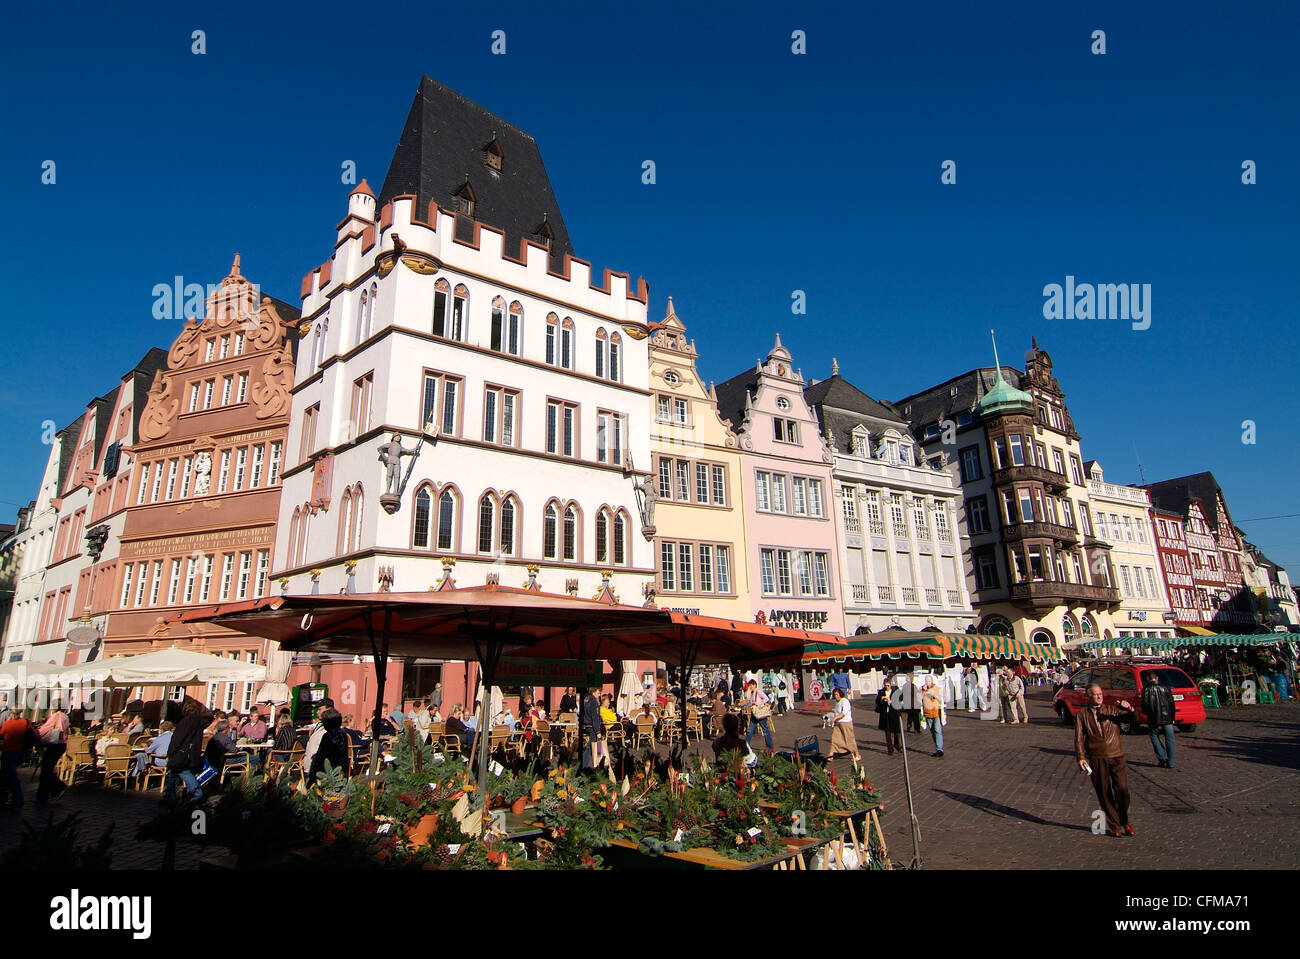 Markt-Quadrat, alte Stadt, Trier, Rheinland-Pfalz, Deutschland, Europa Stockfoto